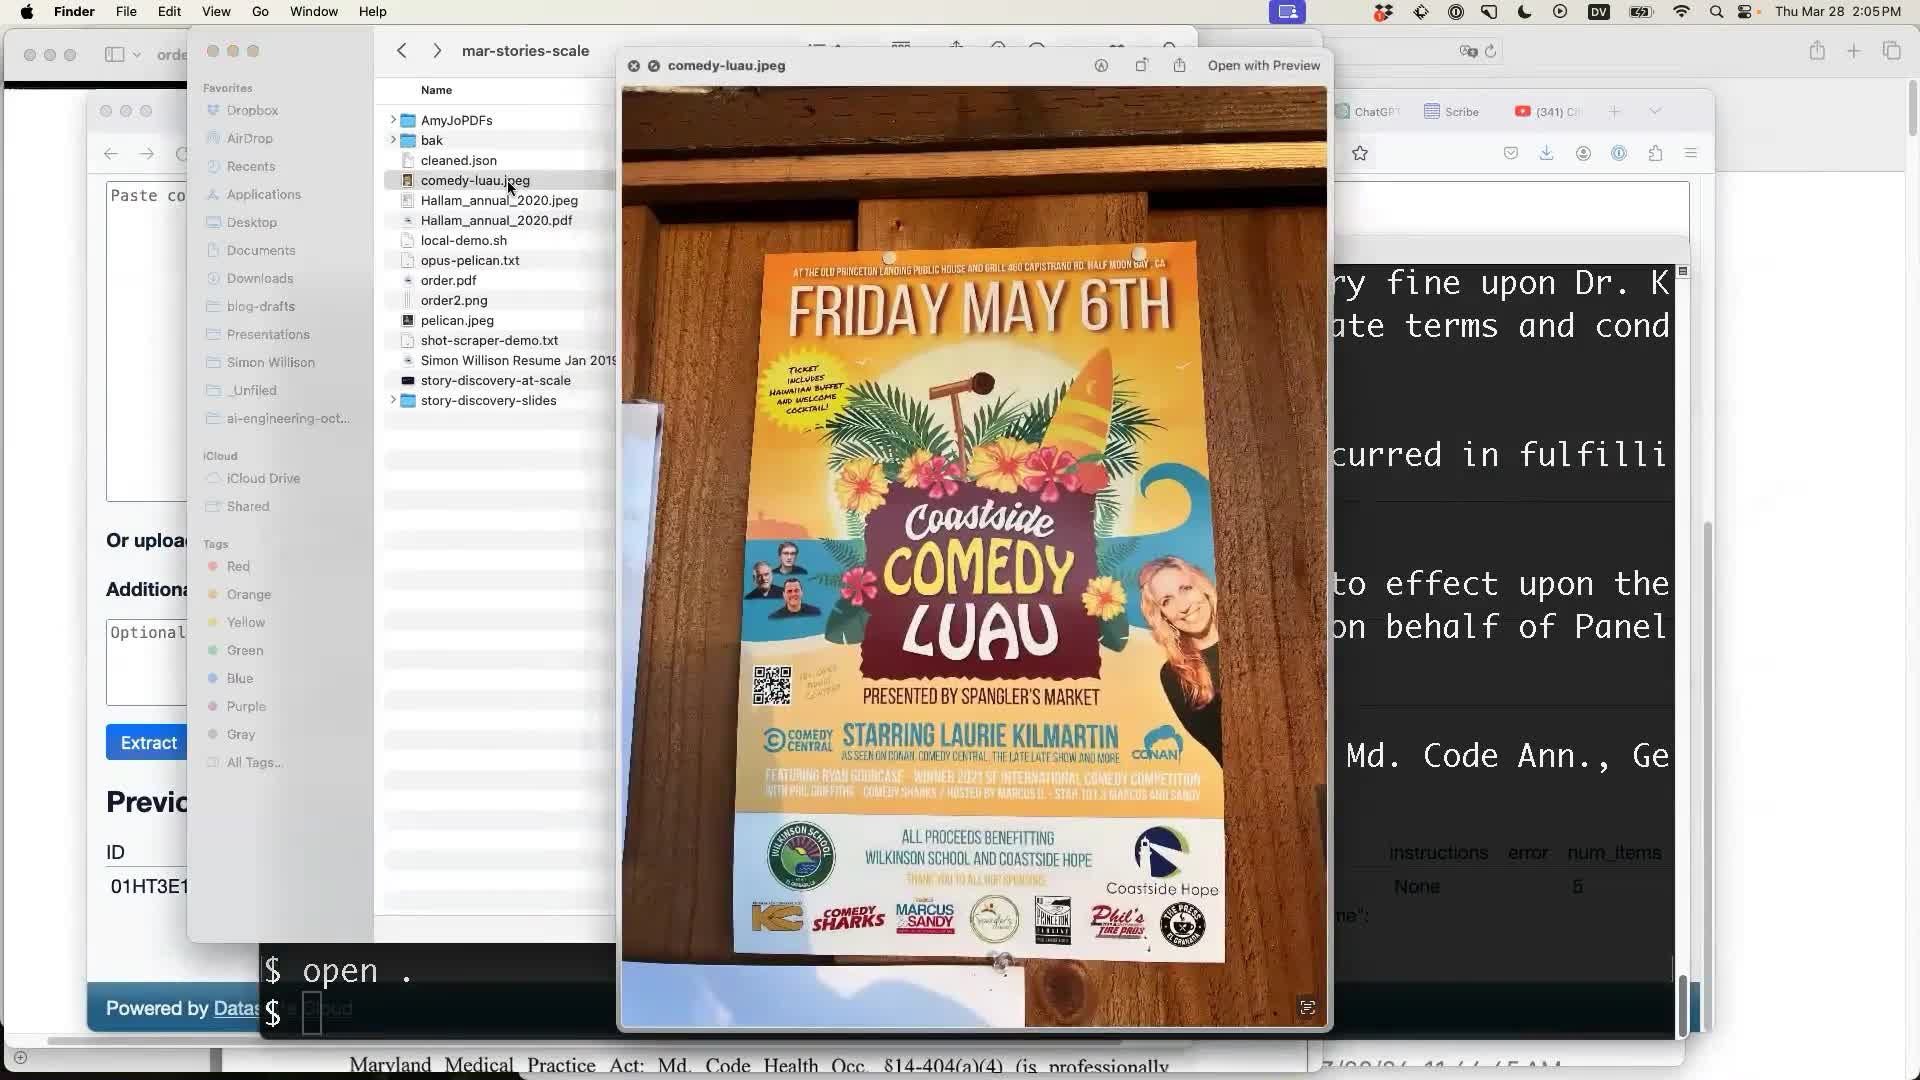 Fridy May 6th Coastside Comedy Luau flier